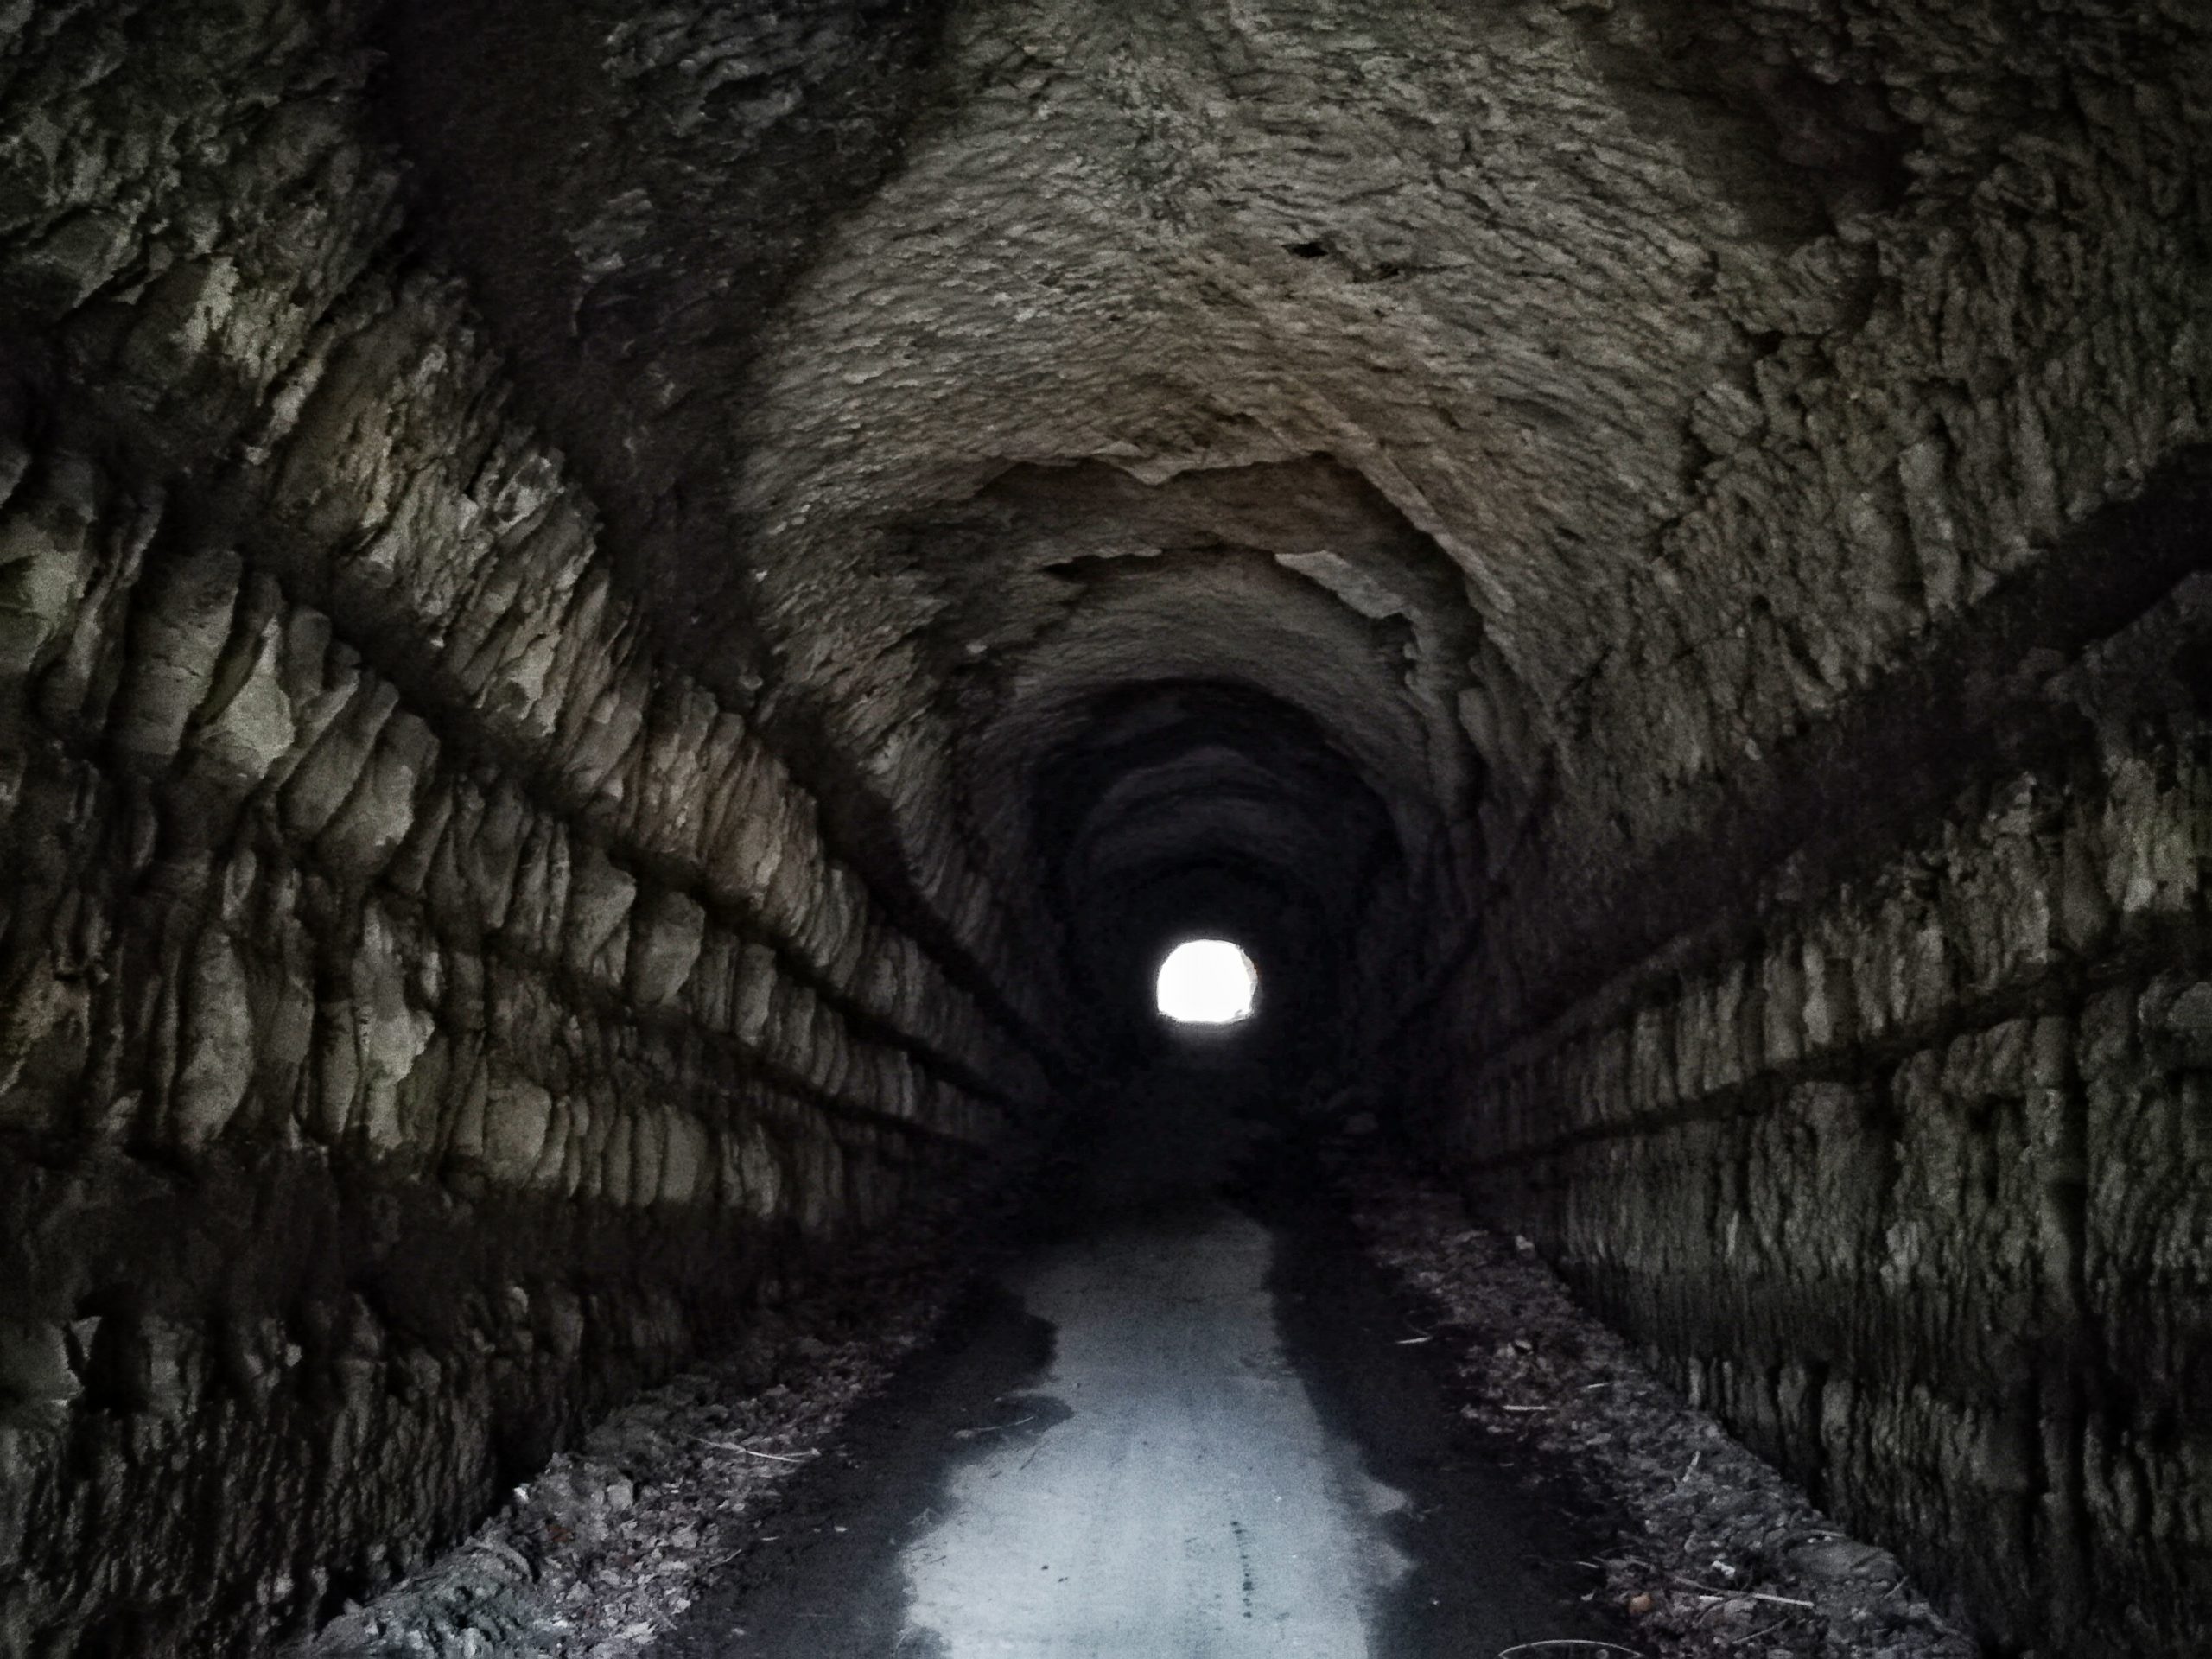 養老渓谷から大多喜町筒森への隧道が連発する林道を走る 房総半島 おすすめの林道コース ロードバイクでヒルクライム 105ヒルクライム Com